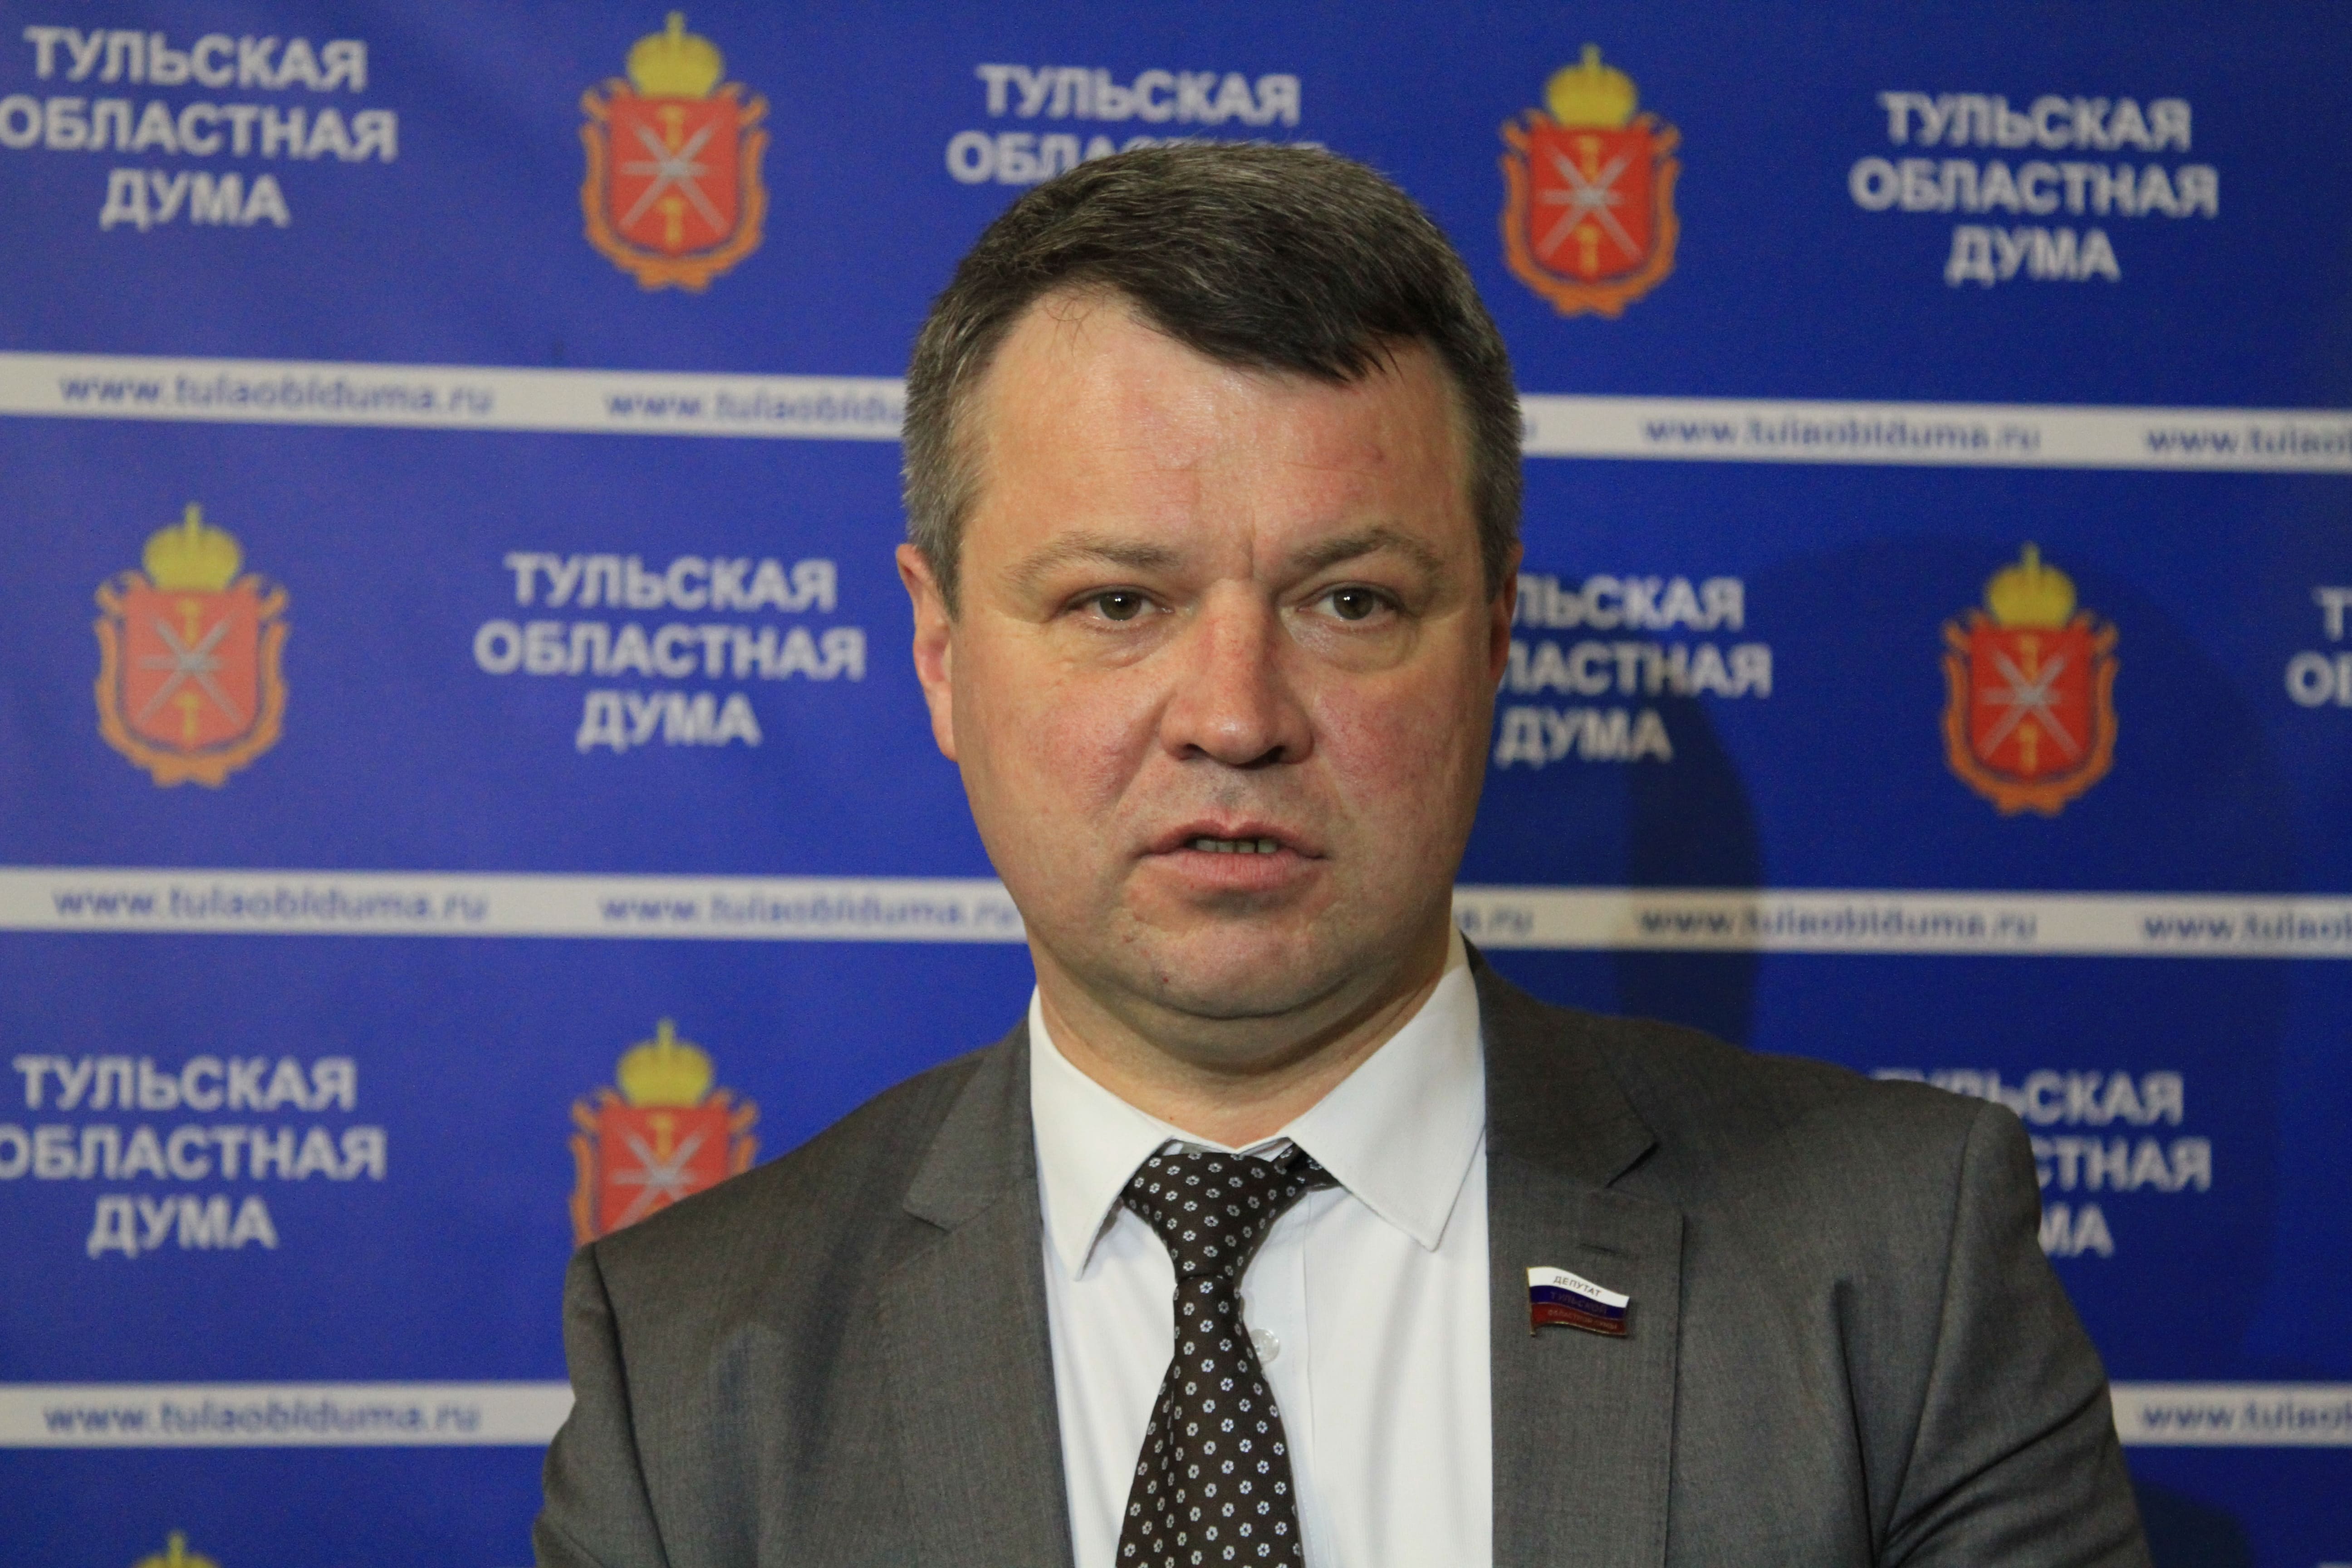 Туляк Юрий Моисеев зарегистрировался кандидатом в губернаторы Кировской области